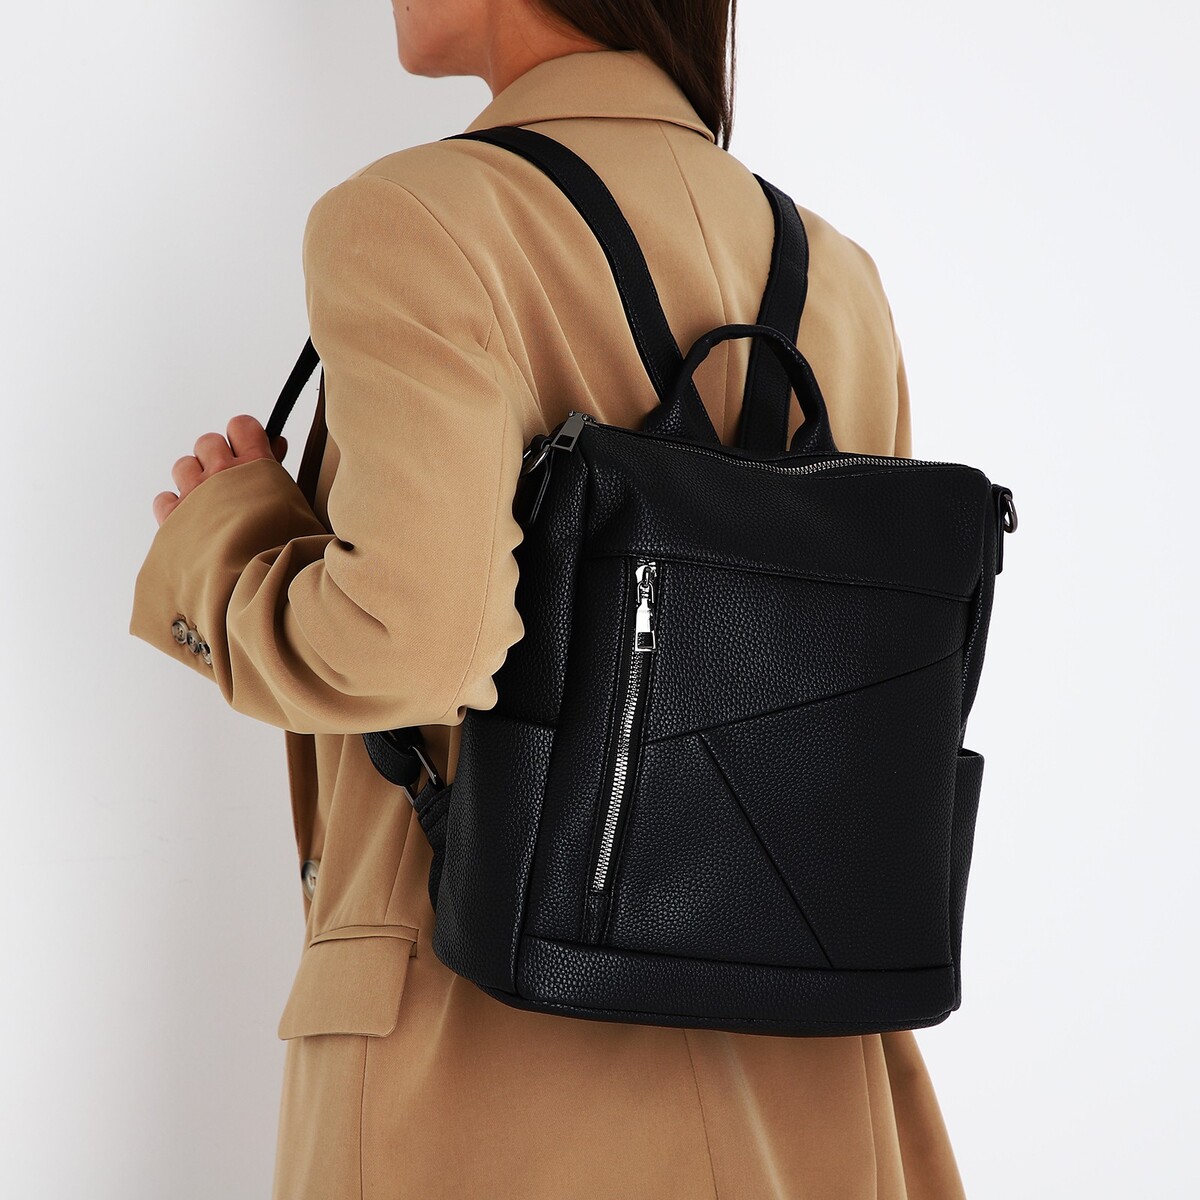 Рюкзак женский из искусственной кожи на молнии, 4 кармана, цвет черный рюкзак молодежный из искусственной кожи на молнии 4 кармана бежевый